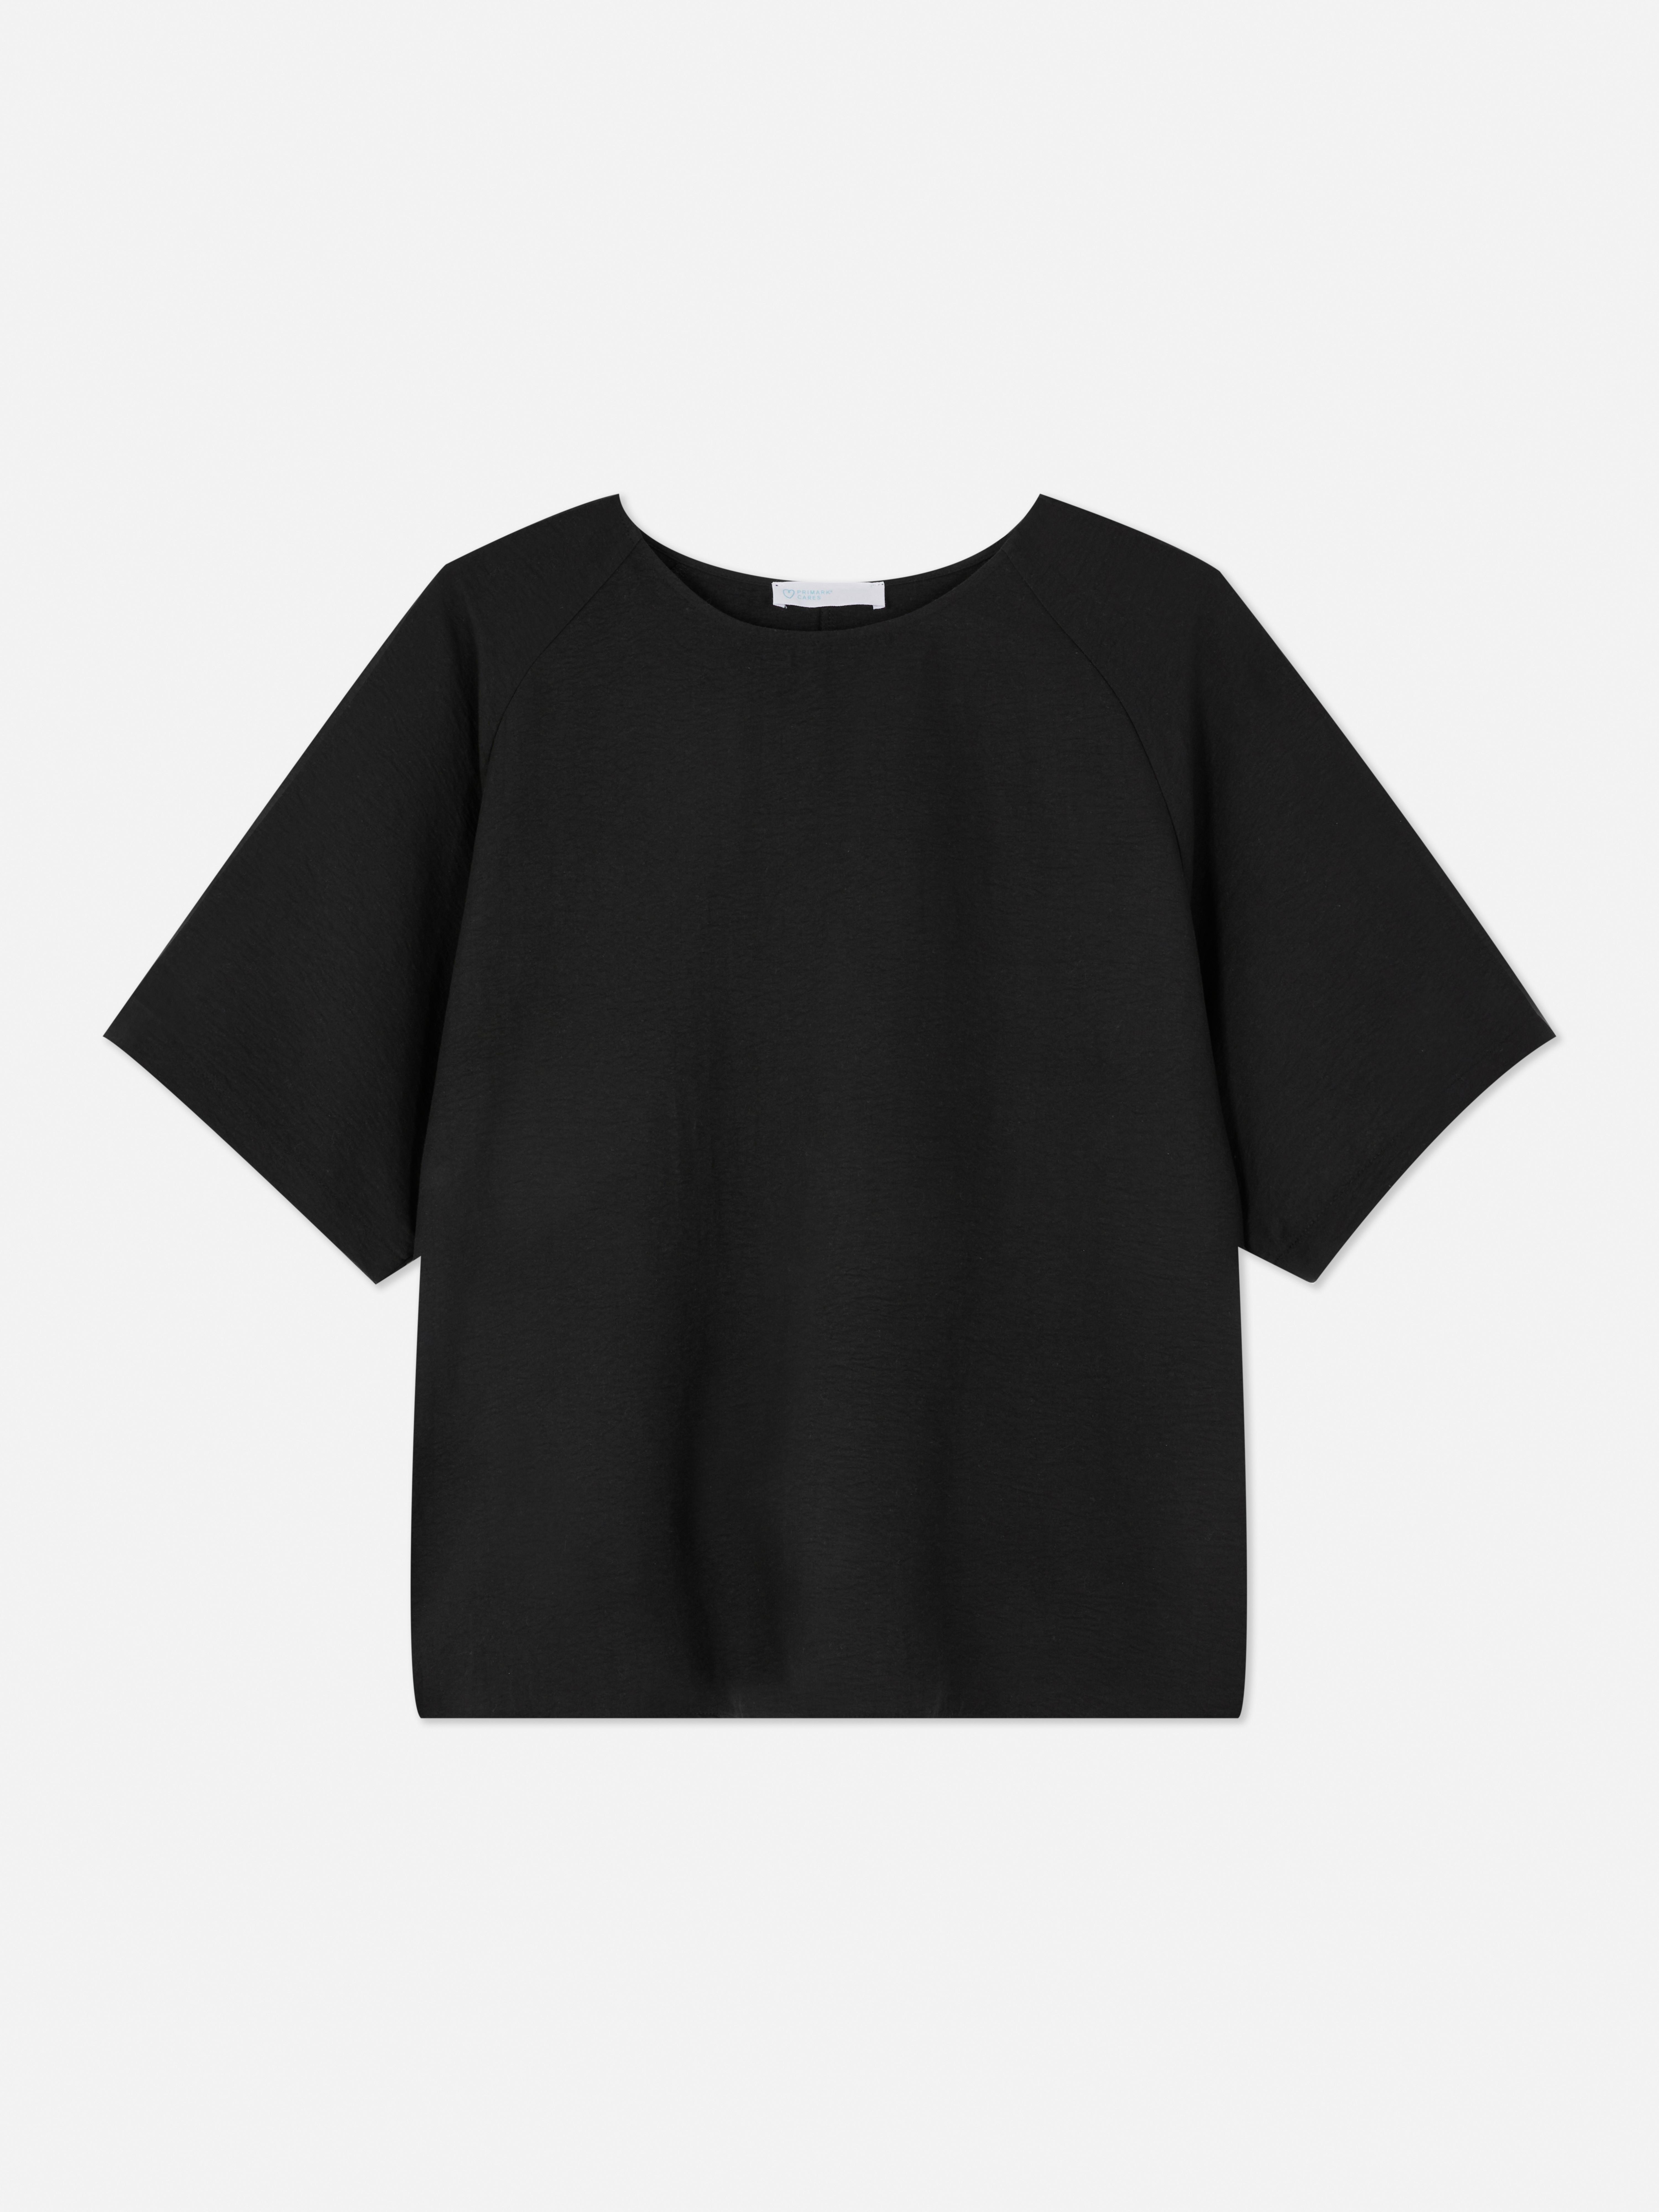 Camiseta lisa de manga raglán | Tops de mujer | Ropa mujer | Nuestra línea de moda femenina | Todos los productos Primark | Primark España